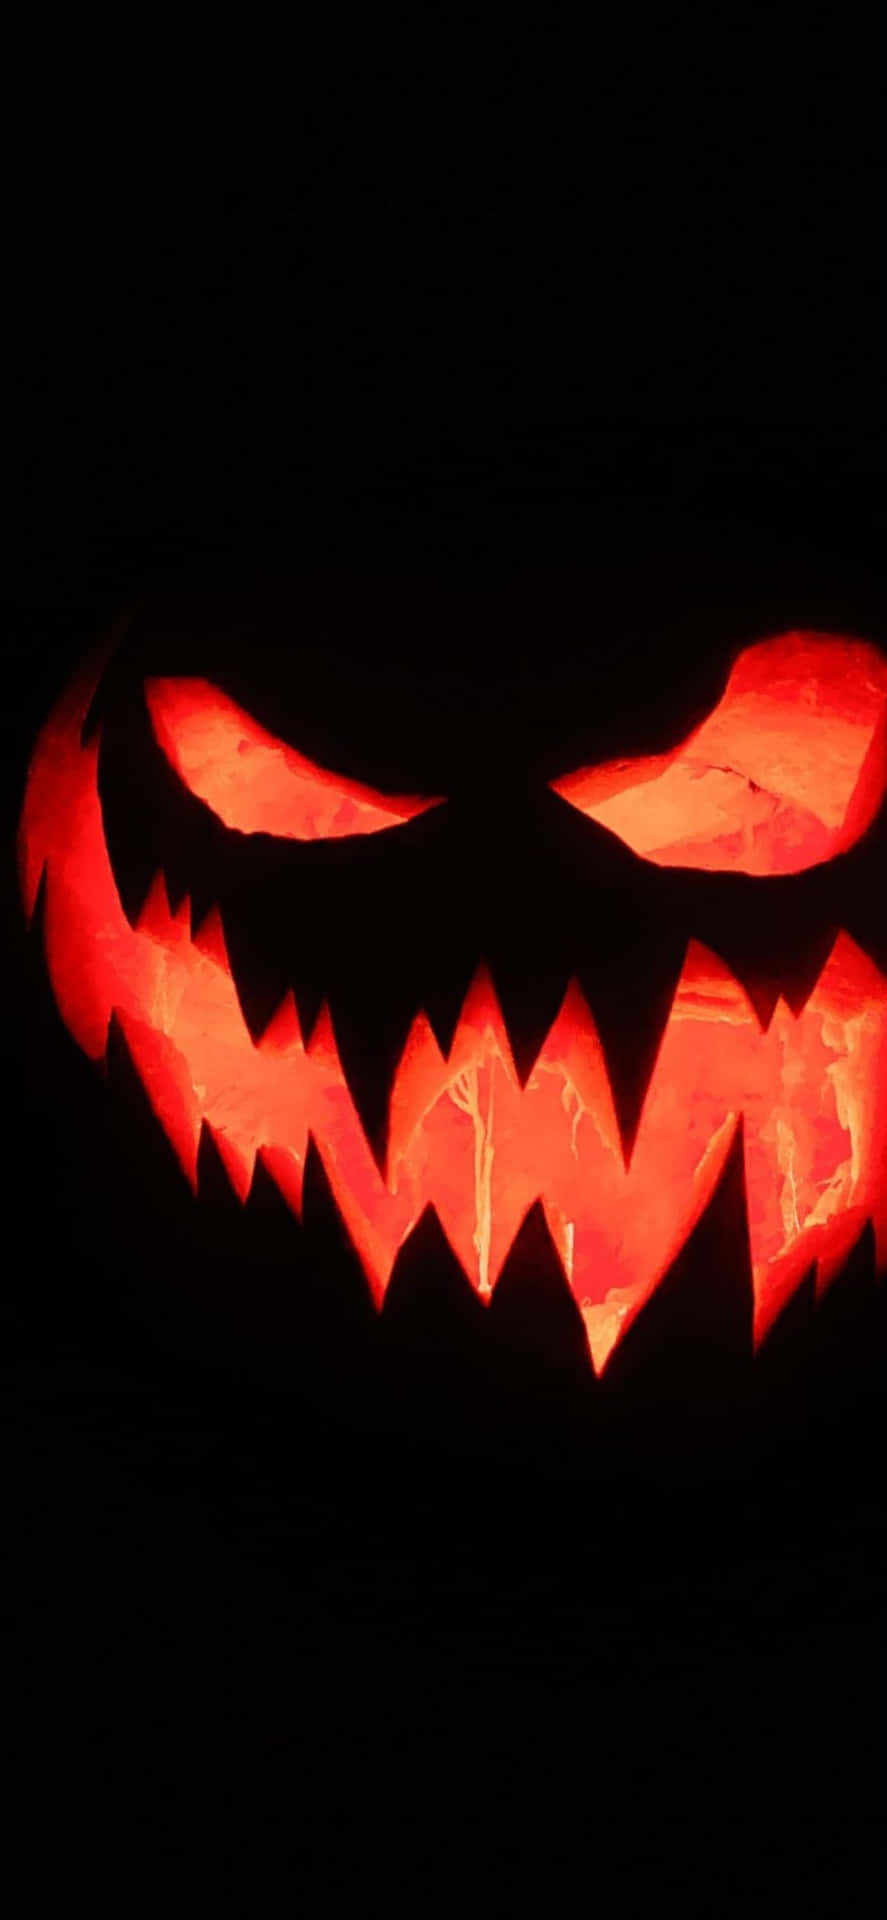 Gebensie Ihrem Gerät Dieses Halloween Mit Einem Gruseligen Iphone-hintergrundbild Einen Schrecken.